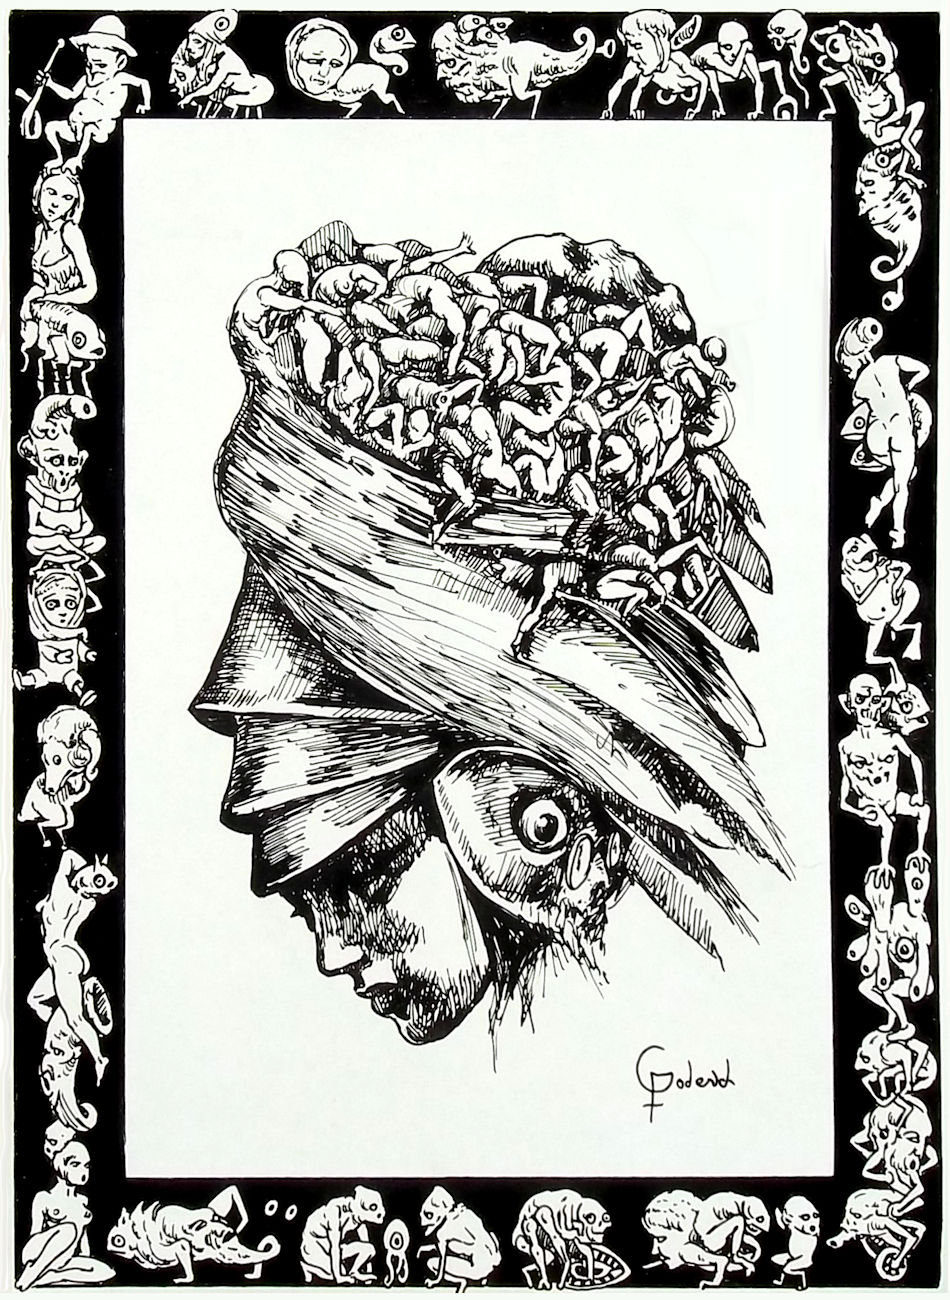 Drawing by Santiago de Cuba artist Fernando Goderich Fabars